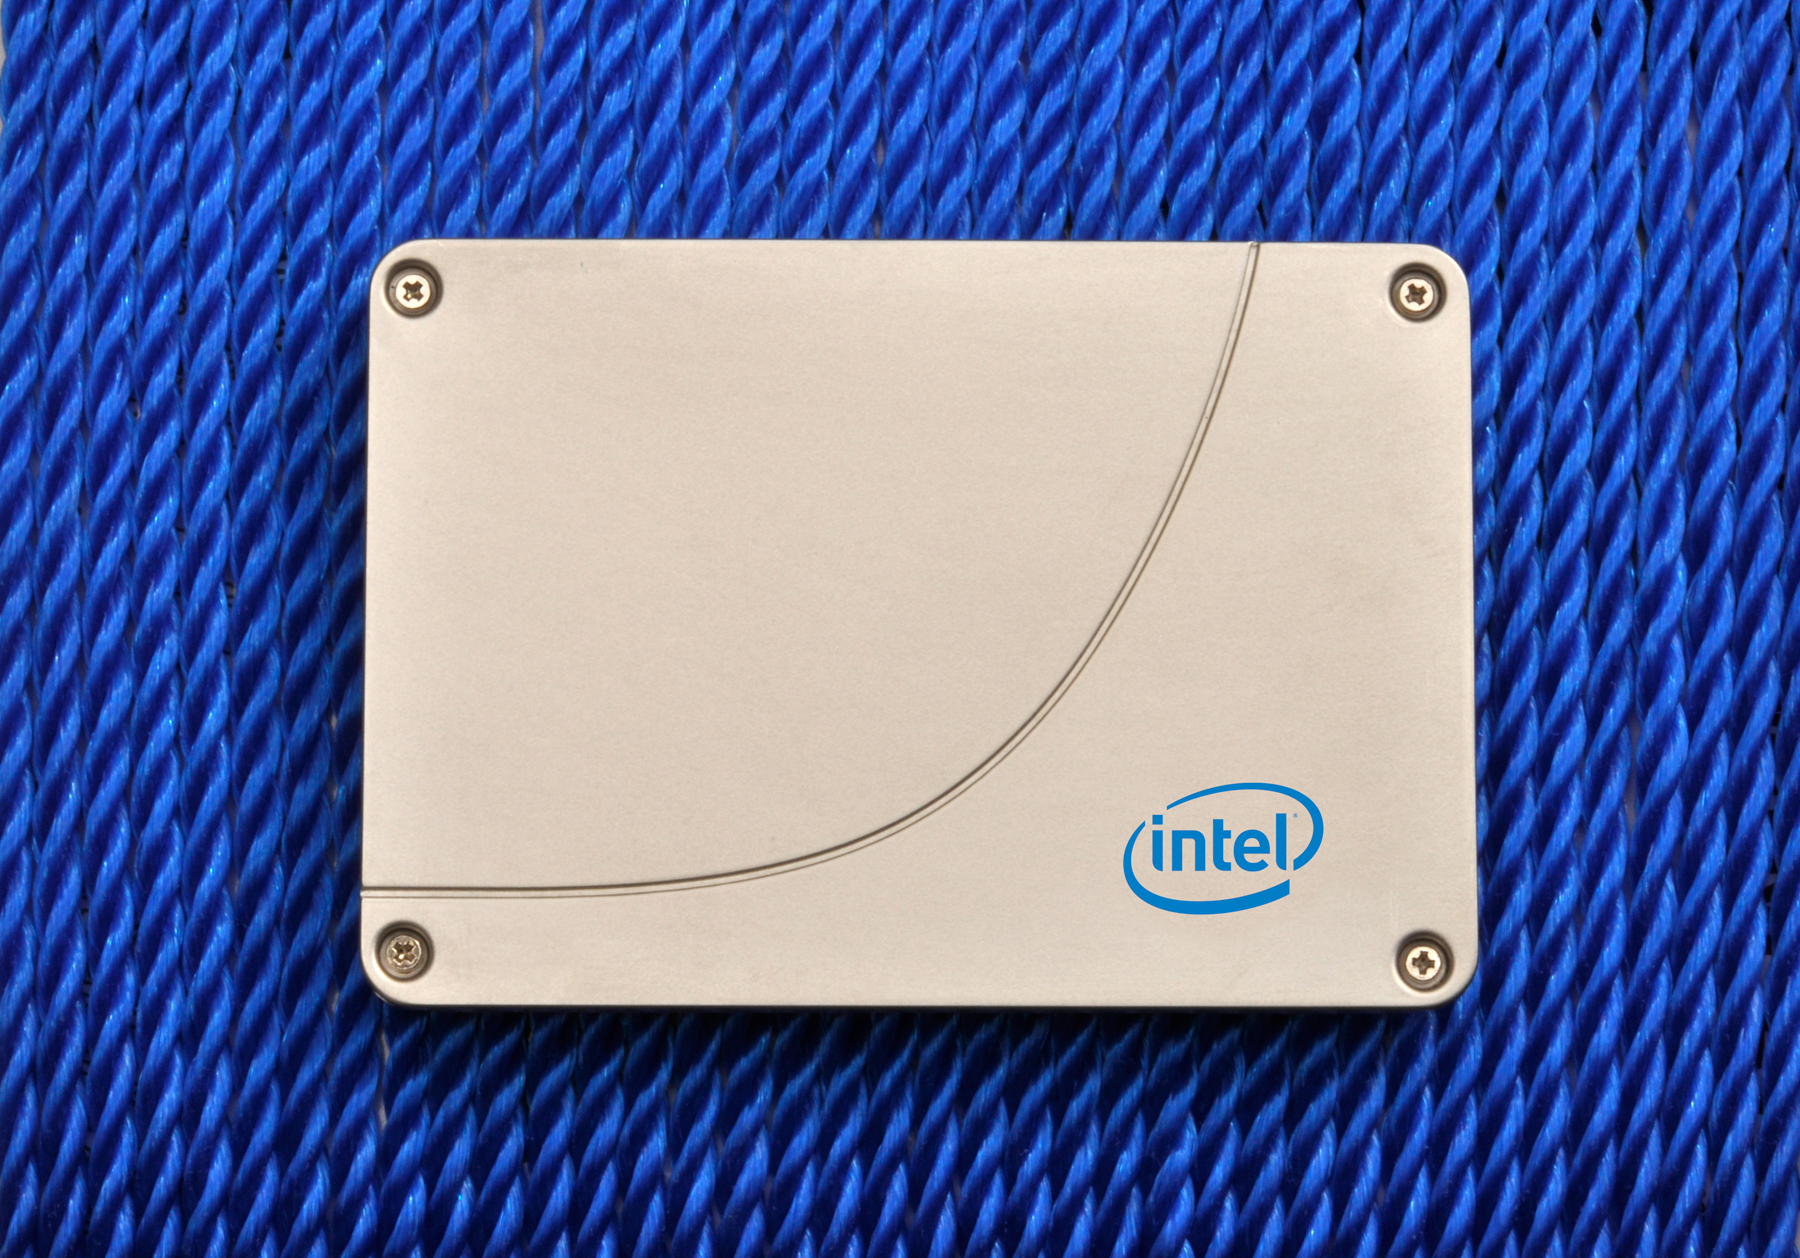 Immagine pubblicata in relazione al seguente contenuto: Intel annuncia i drive a stato solido consumer oriented SSD 520 | Nome immagine: news16596_1.jpg